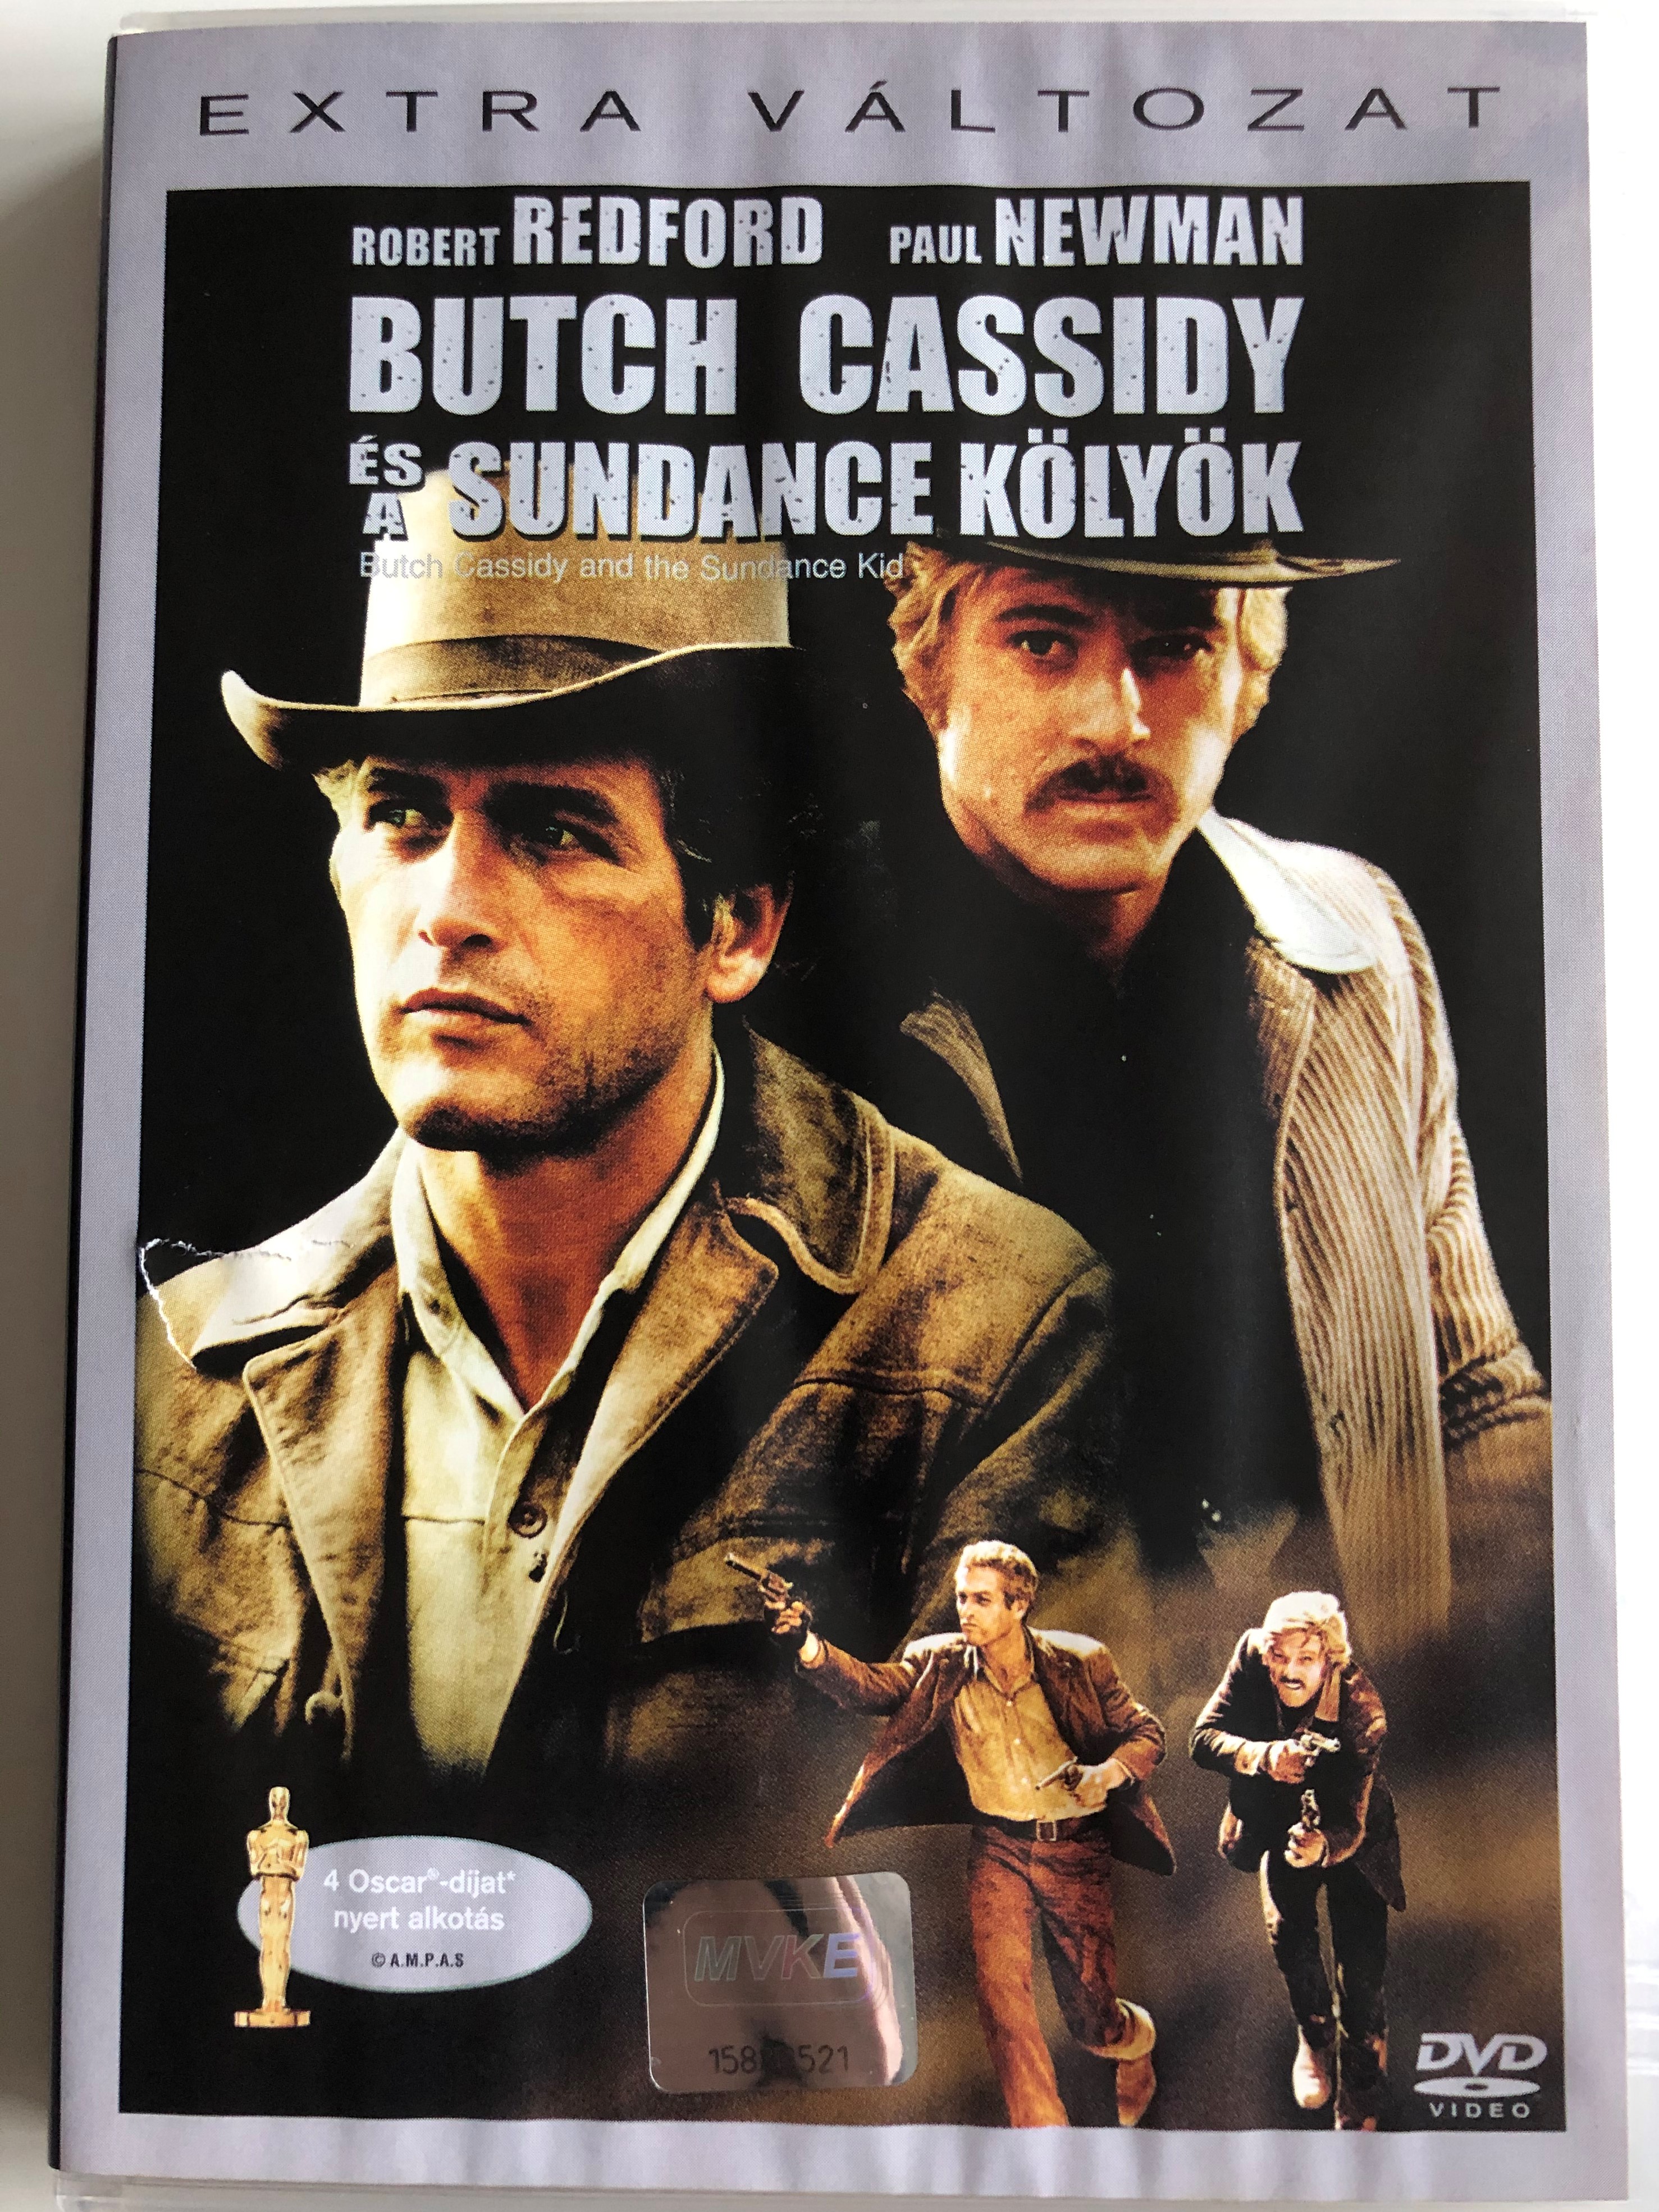 butch-cassidy-and-the-sundance-kid-dvd-1969-butch-cassidy-s-a-sundance-k-ly-k-1.jpg